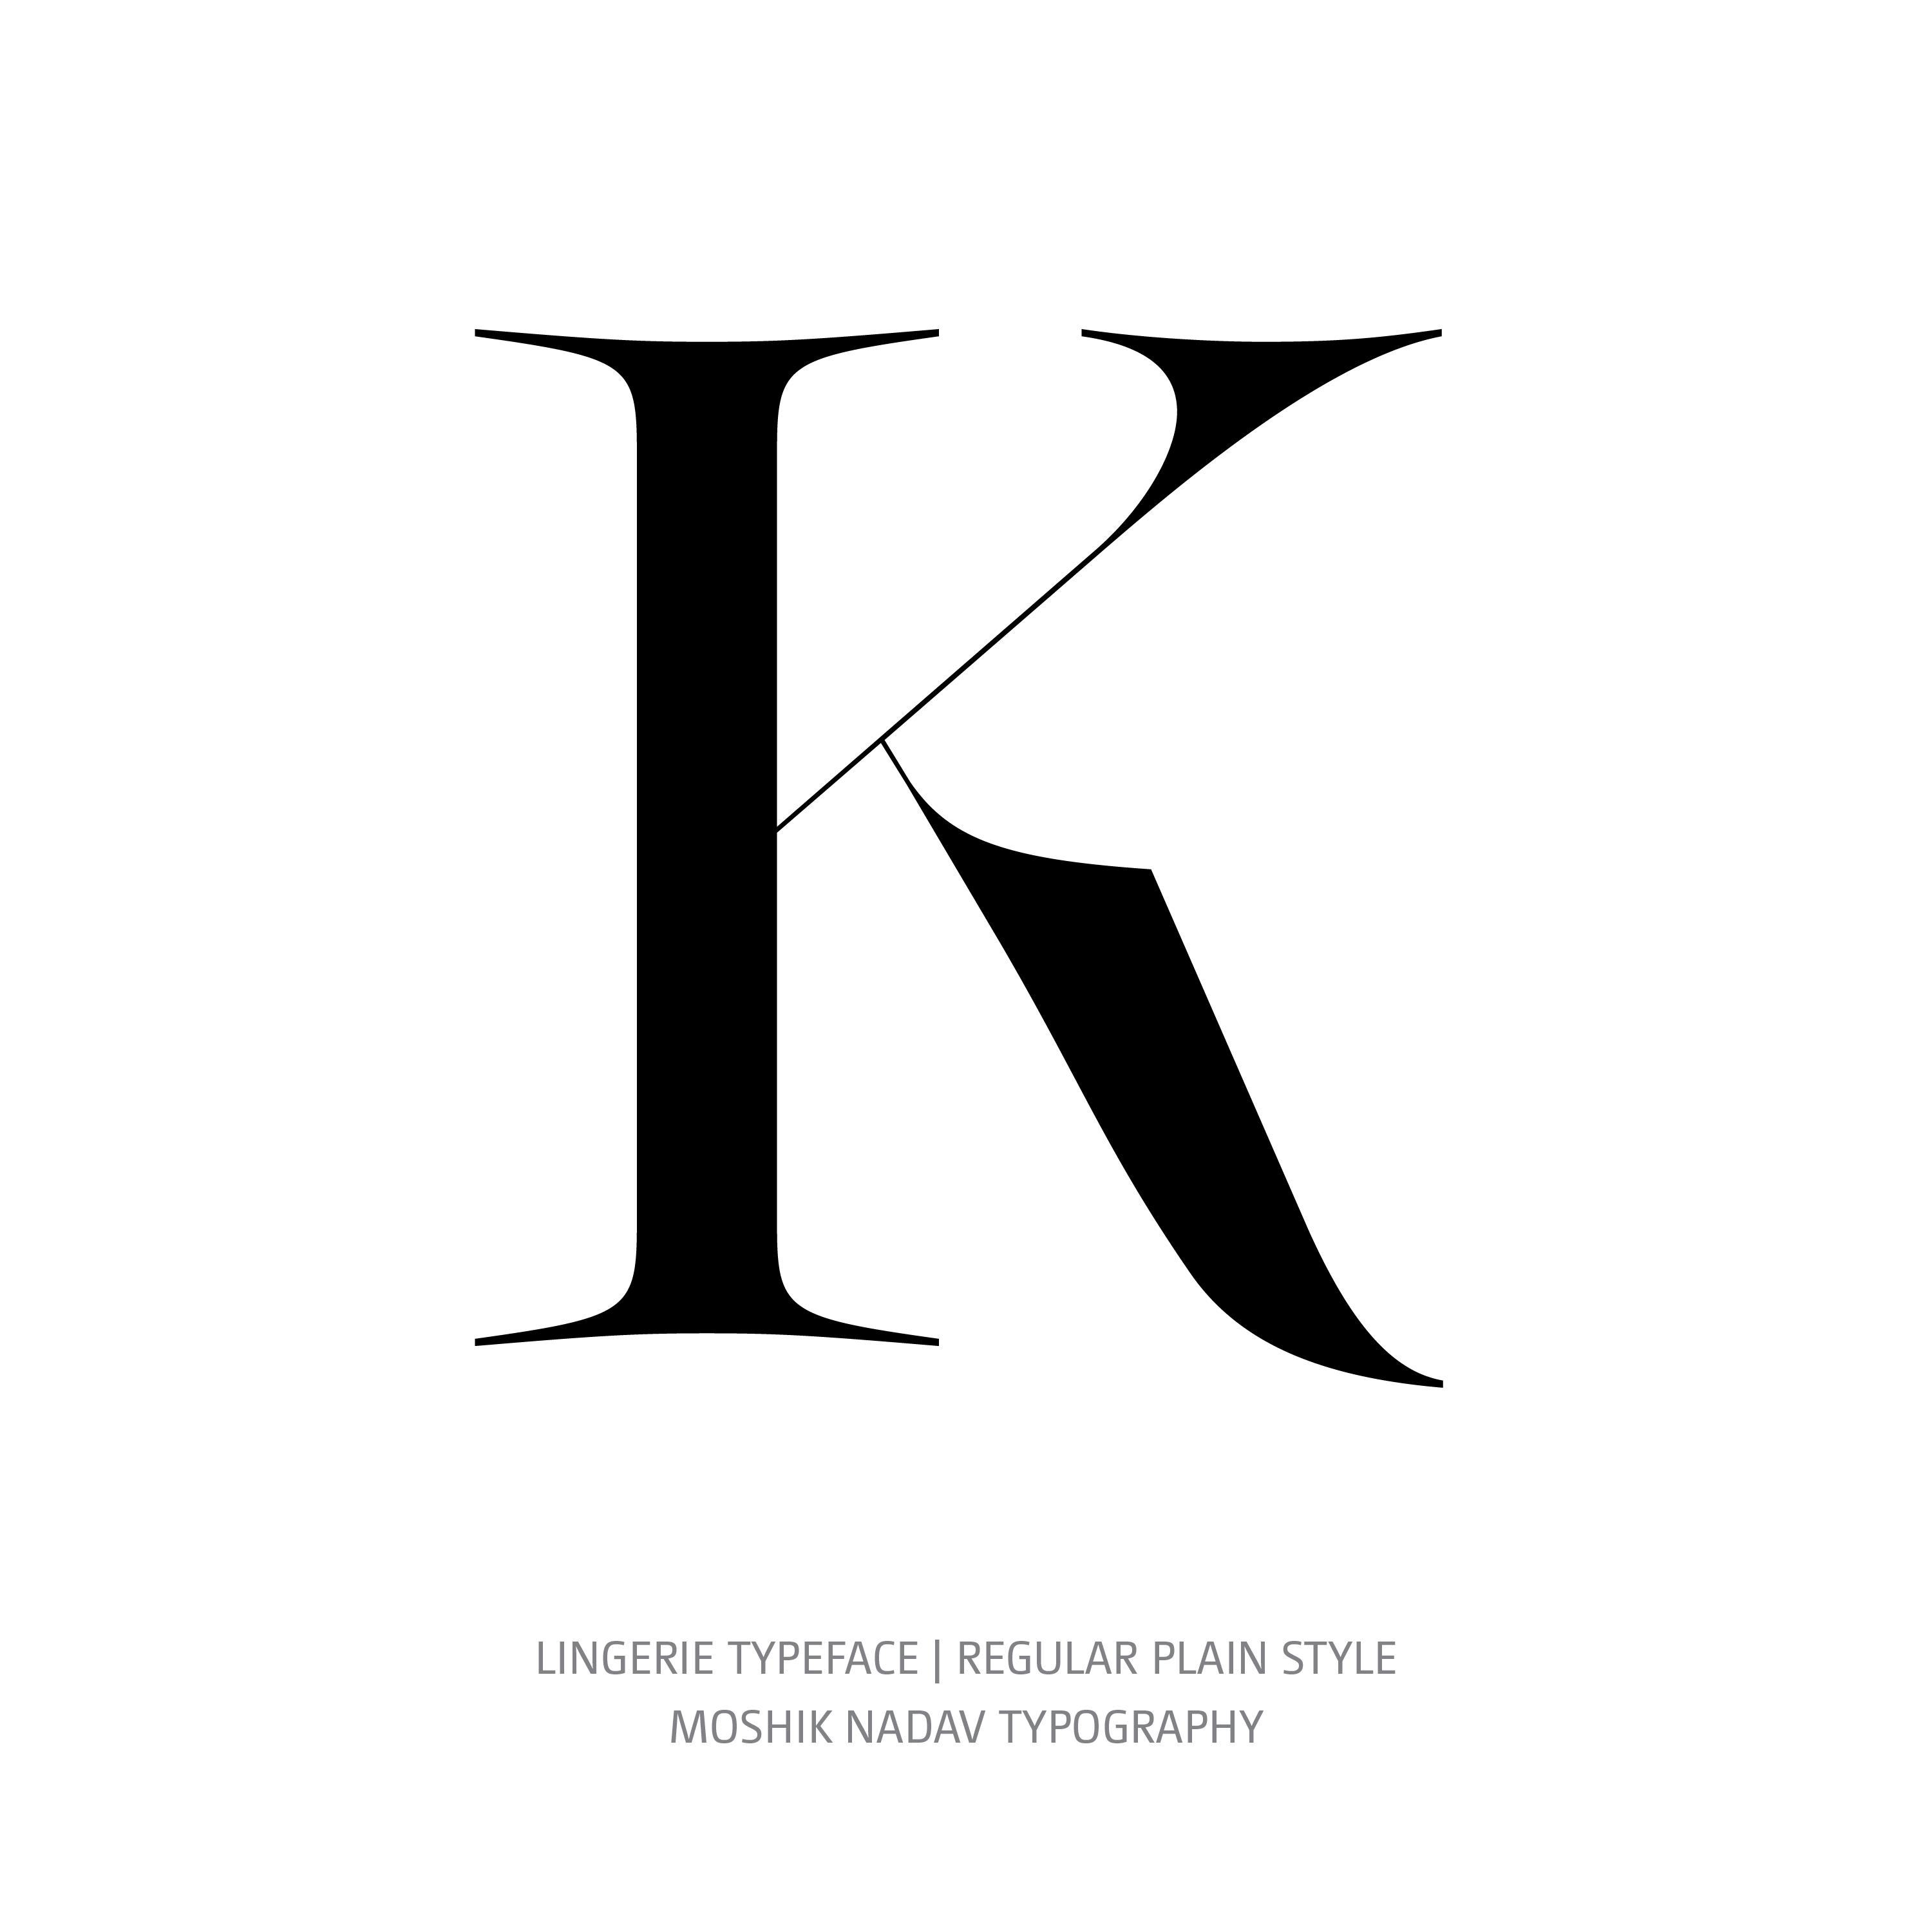 Lingerie Typeface Regular Plain K